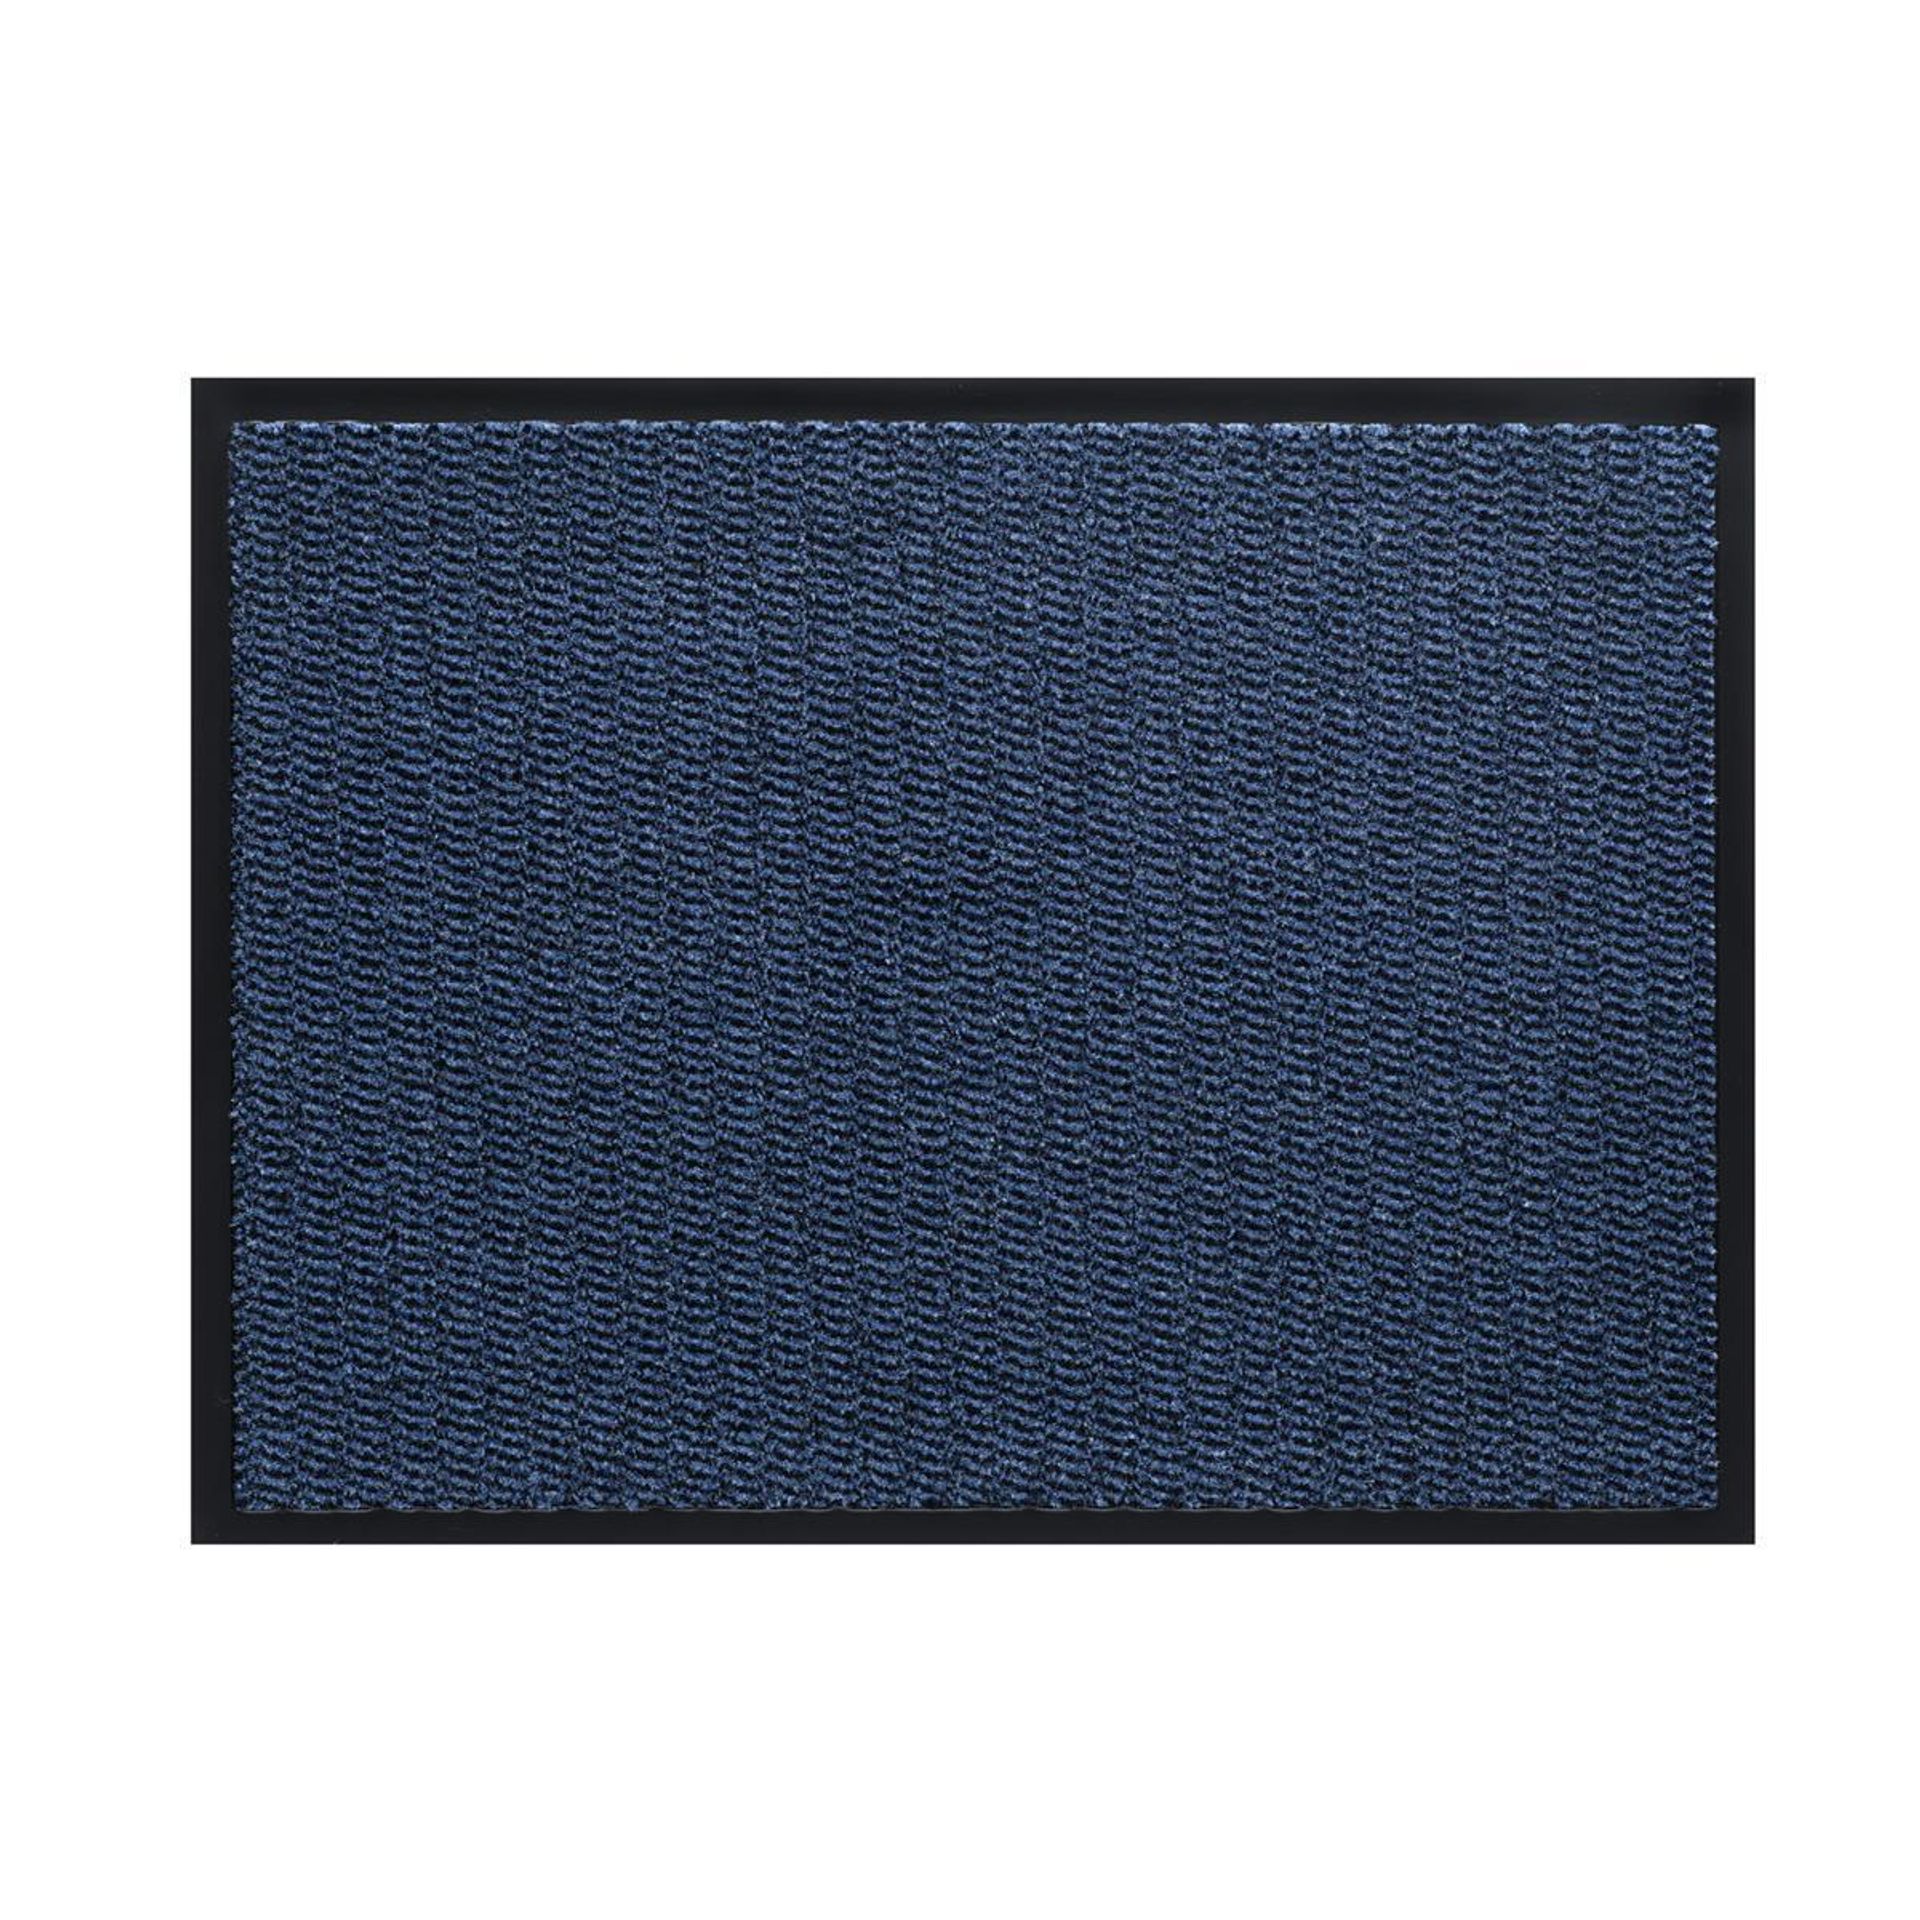 Sauberlauf Innen Spectrum 010 blue - Rollenbreite 120 cm